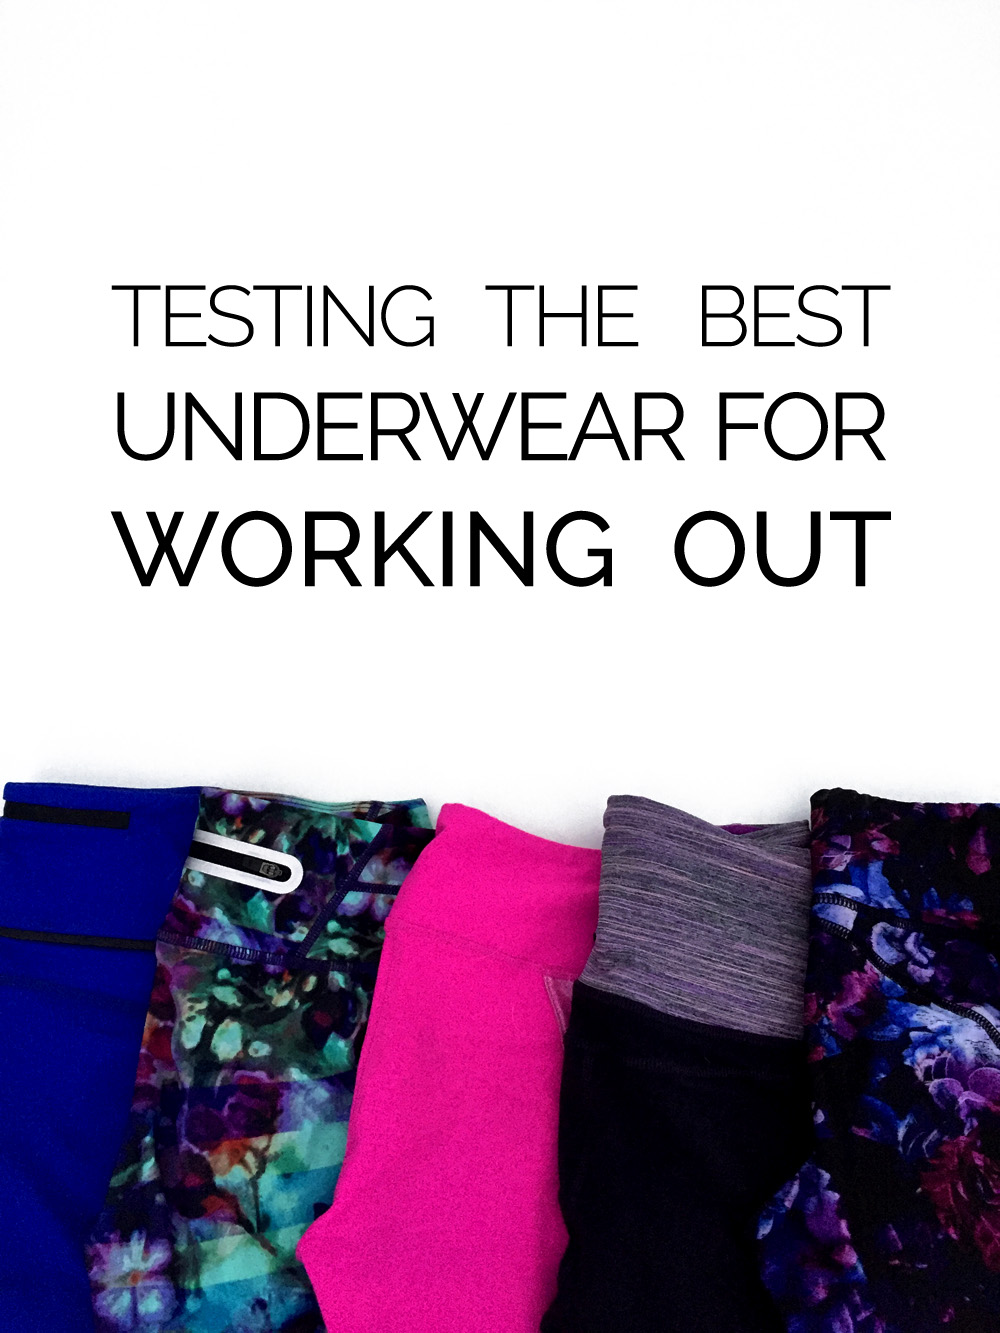 https://s7758.pcdn.co/wp-content/uploads/2016/01/best-underwear-for-workouts.jpg